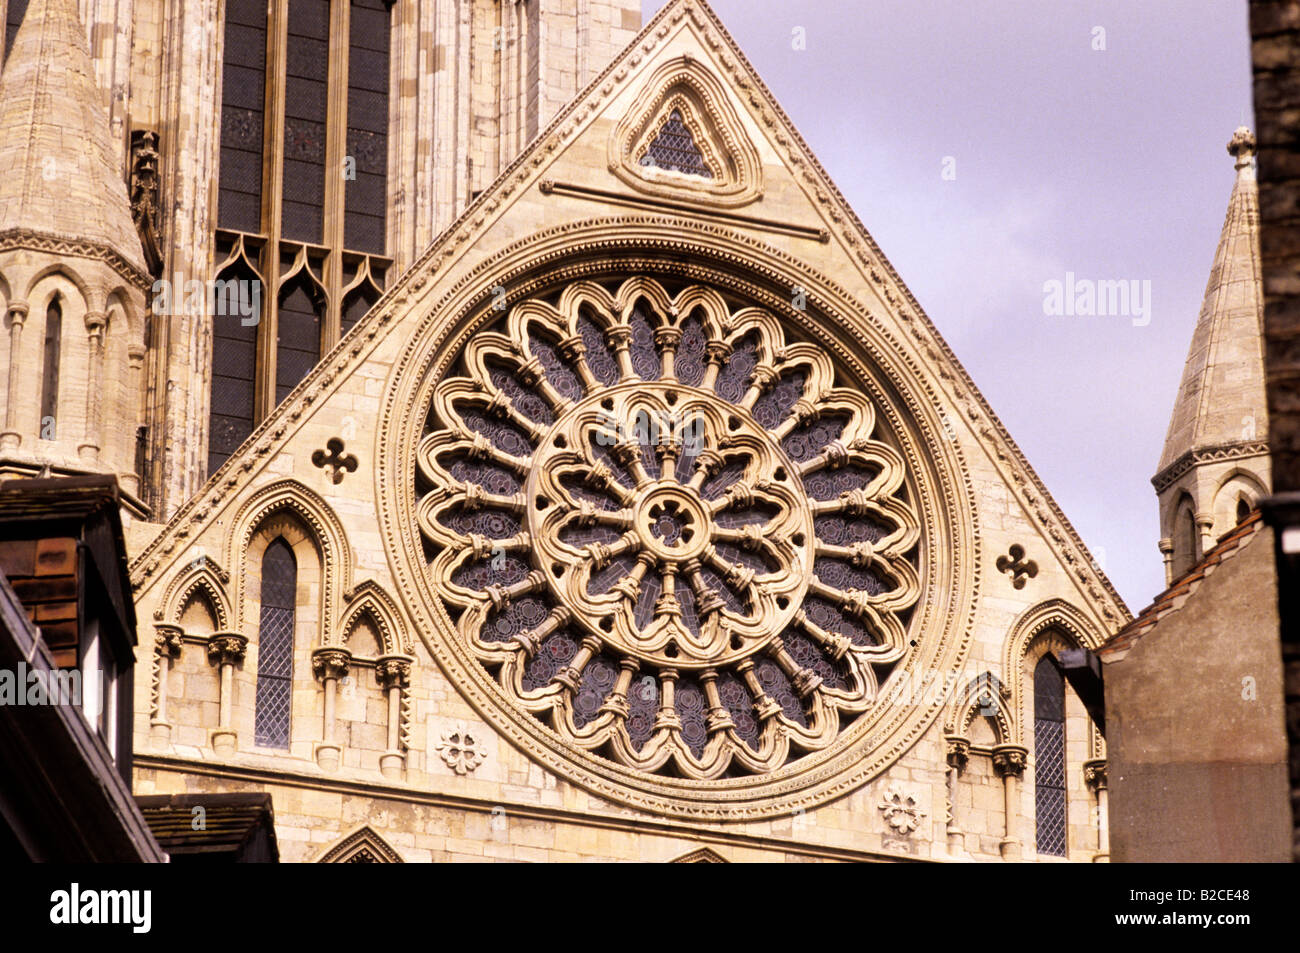 La cathédrale de York rosace transept sud reconstruit après l'incendie de la cathédrale médiévale anglaise England UK Yorkshire tourisme voyage Banque D'Images